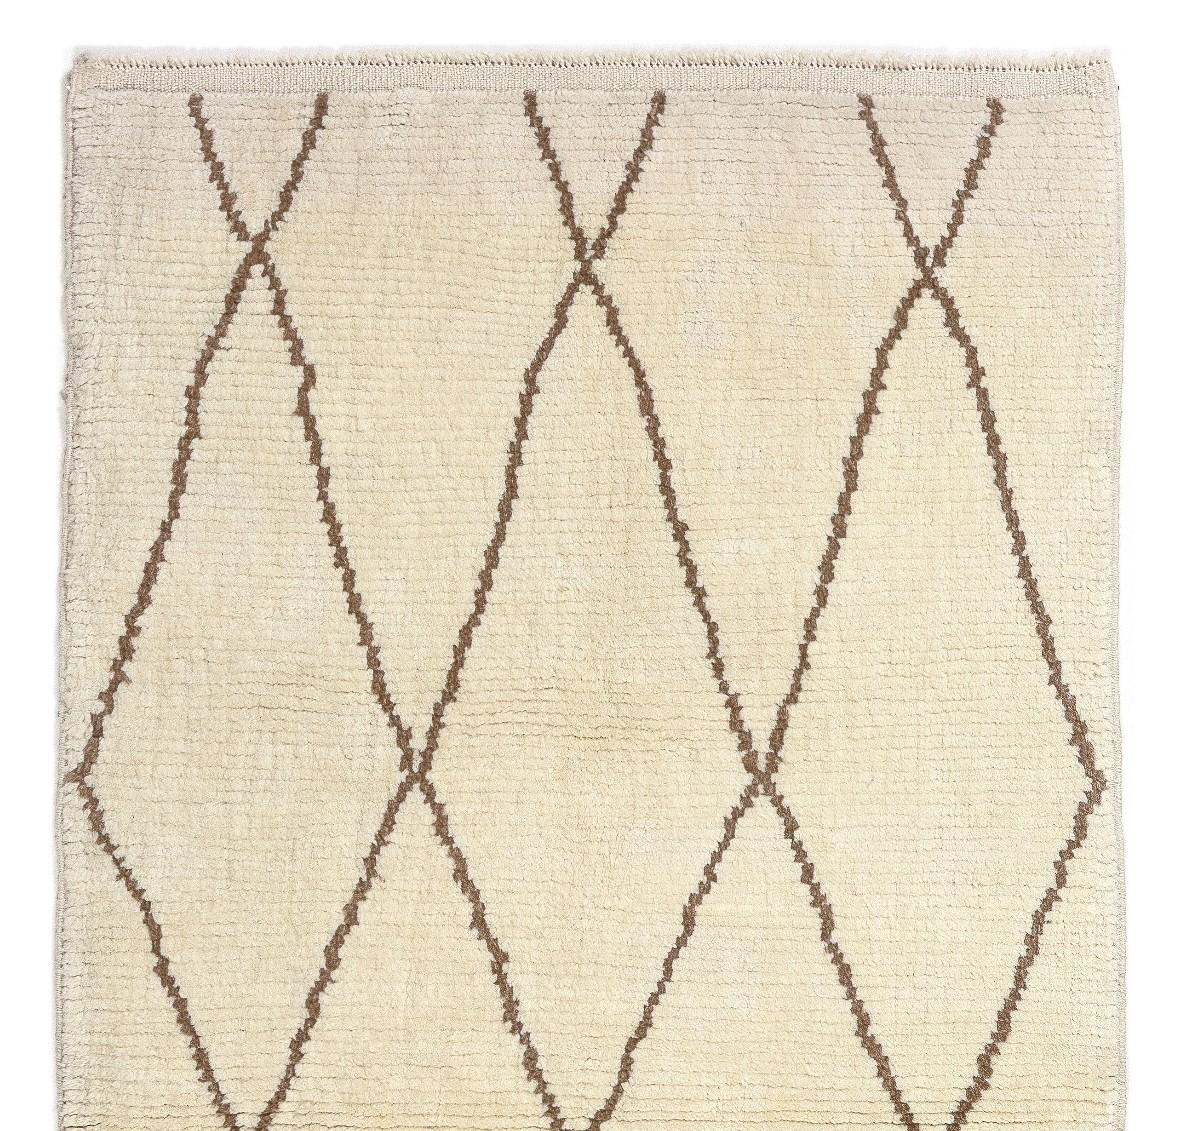 Ein moderner handgeknüpfter marokkanischer Teppich aus pflanzengefärbter Schafwolle. 
Weicher, komfortabler Flor, ideal für Familien mit Kindern. Größe 3.4x6 Ft

Erhältlich so wie er ist oder nach Maß in jeder gewünschten Größe und Farbkombination.